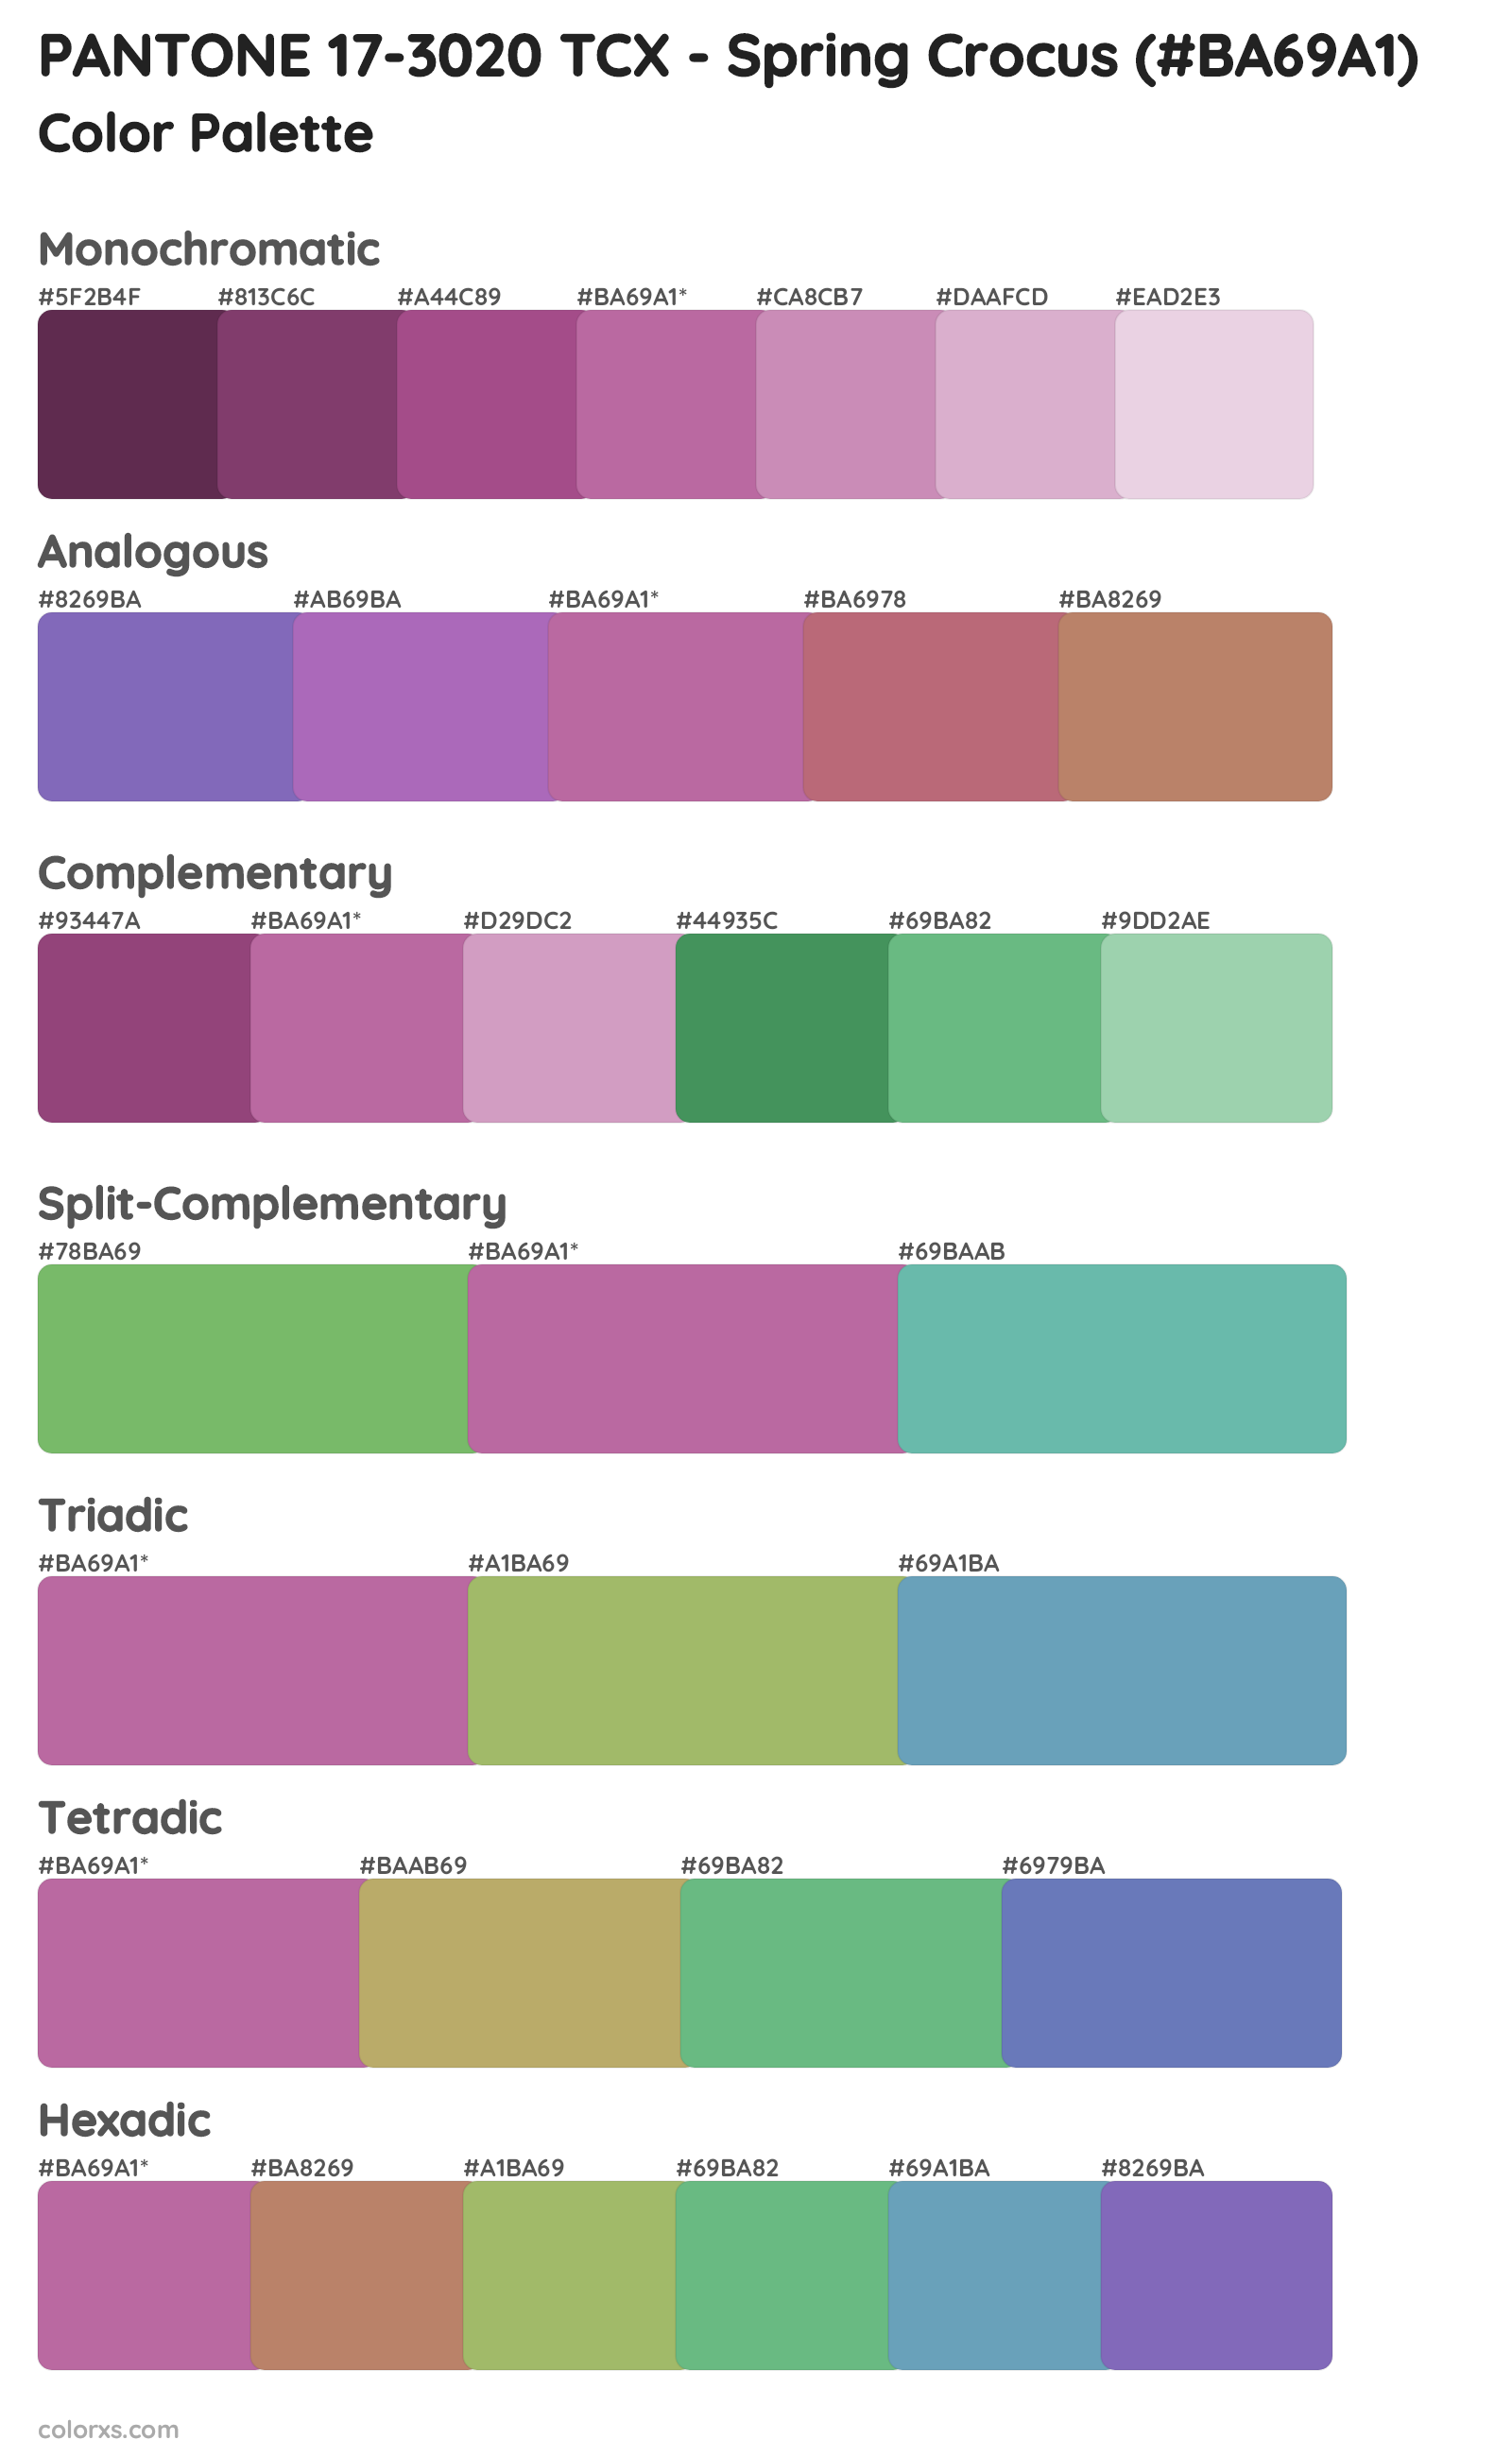 PANTONE 17-3020 TCX - Spring Crocus Color Scheme Palettes